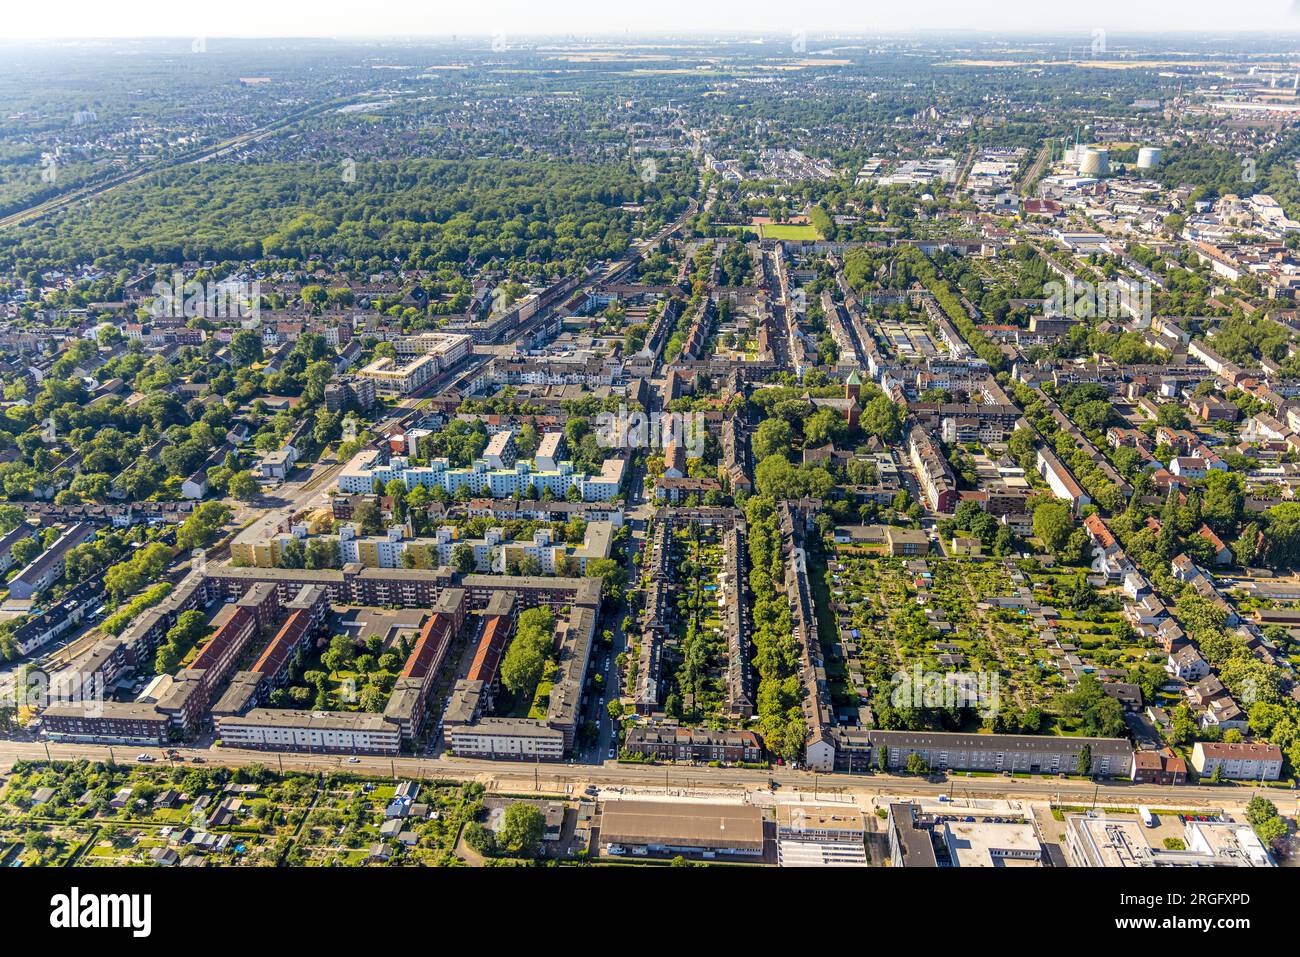 Luftbild, Wohngebiet Nikolaistraße und KGV Feldmark, Wanheimerort, Duisburg, Ruhrgebiet, Nordrhein-Westfalen, Deutschland Stock Photo